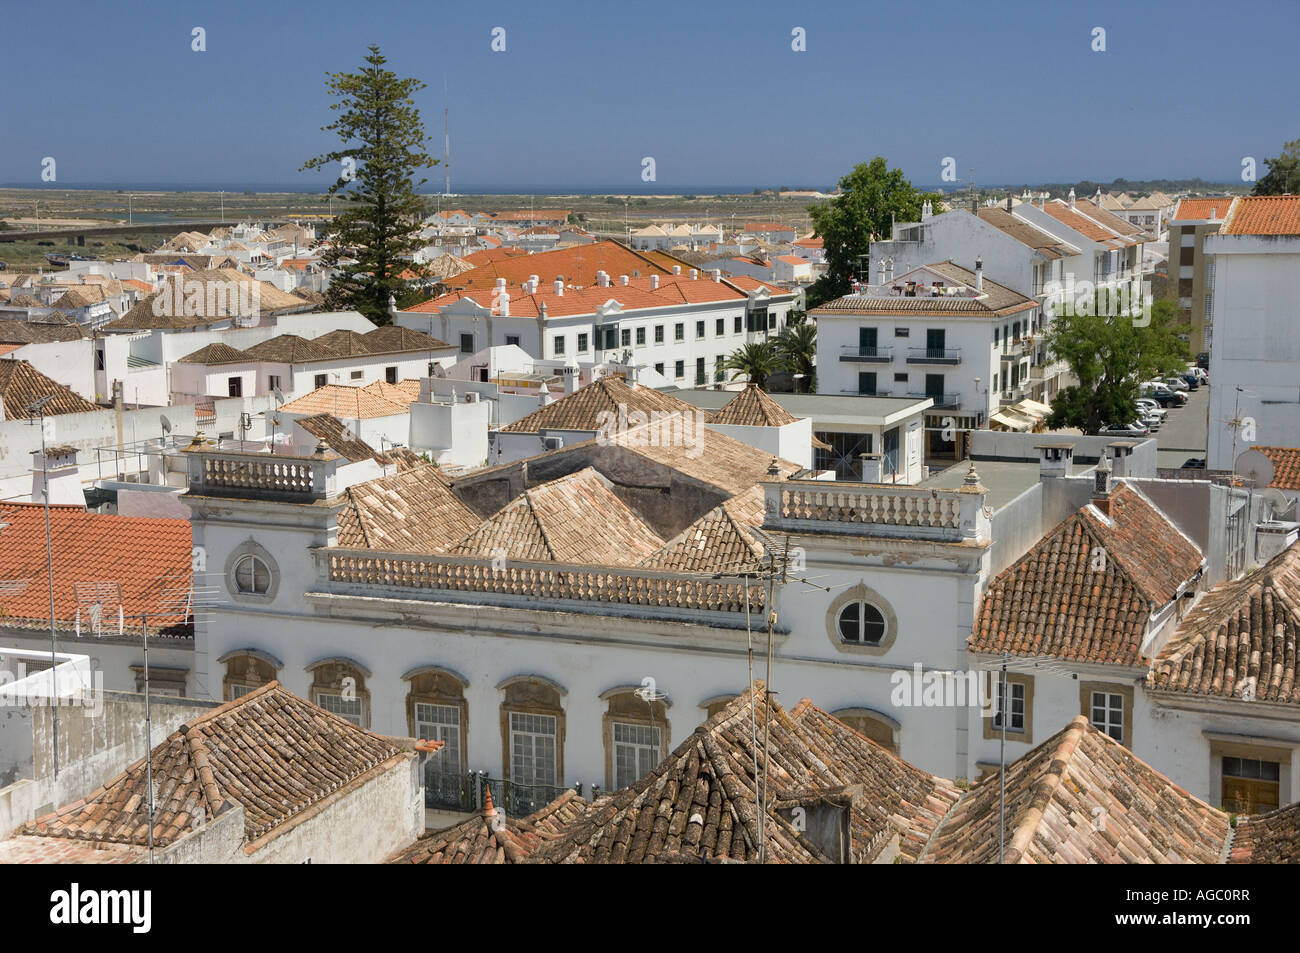 Die Algarve Tavira Blick in Richtung Meer Over Town Dächer vom Schloss aus gesehen Stockfoto